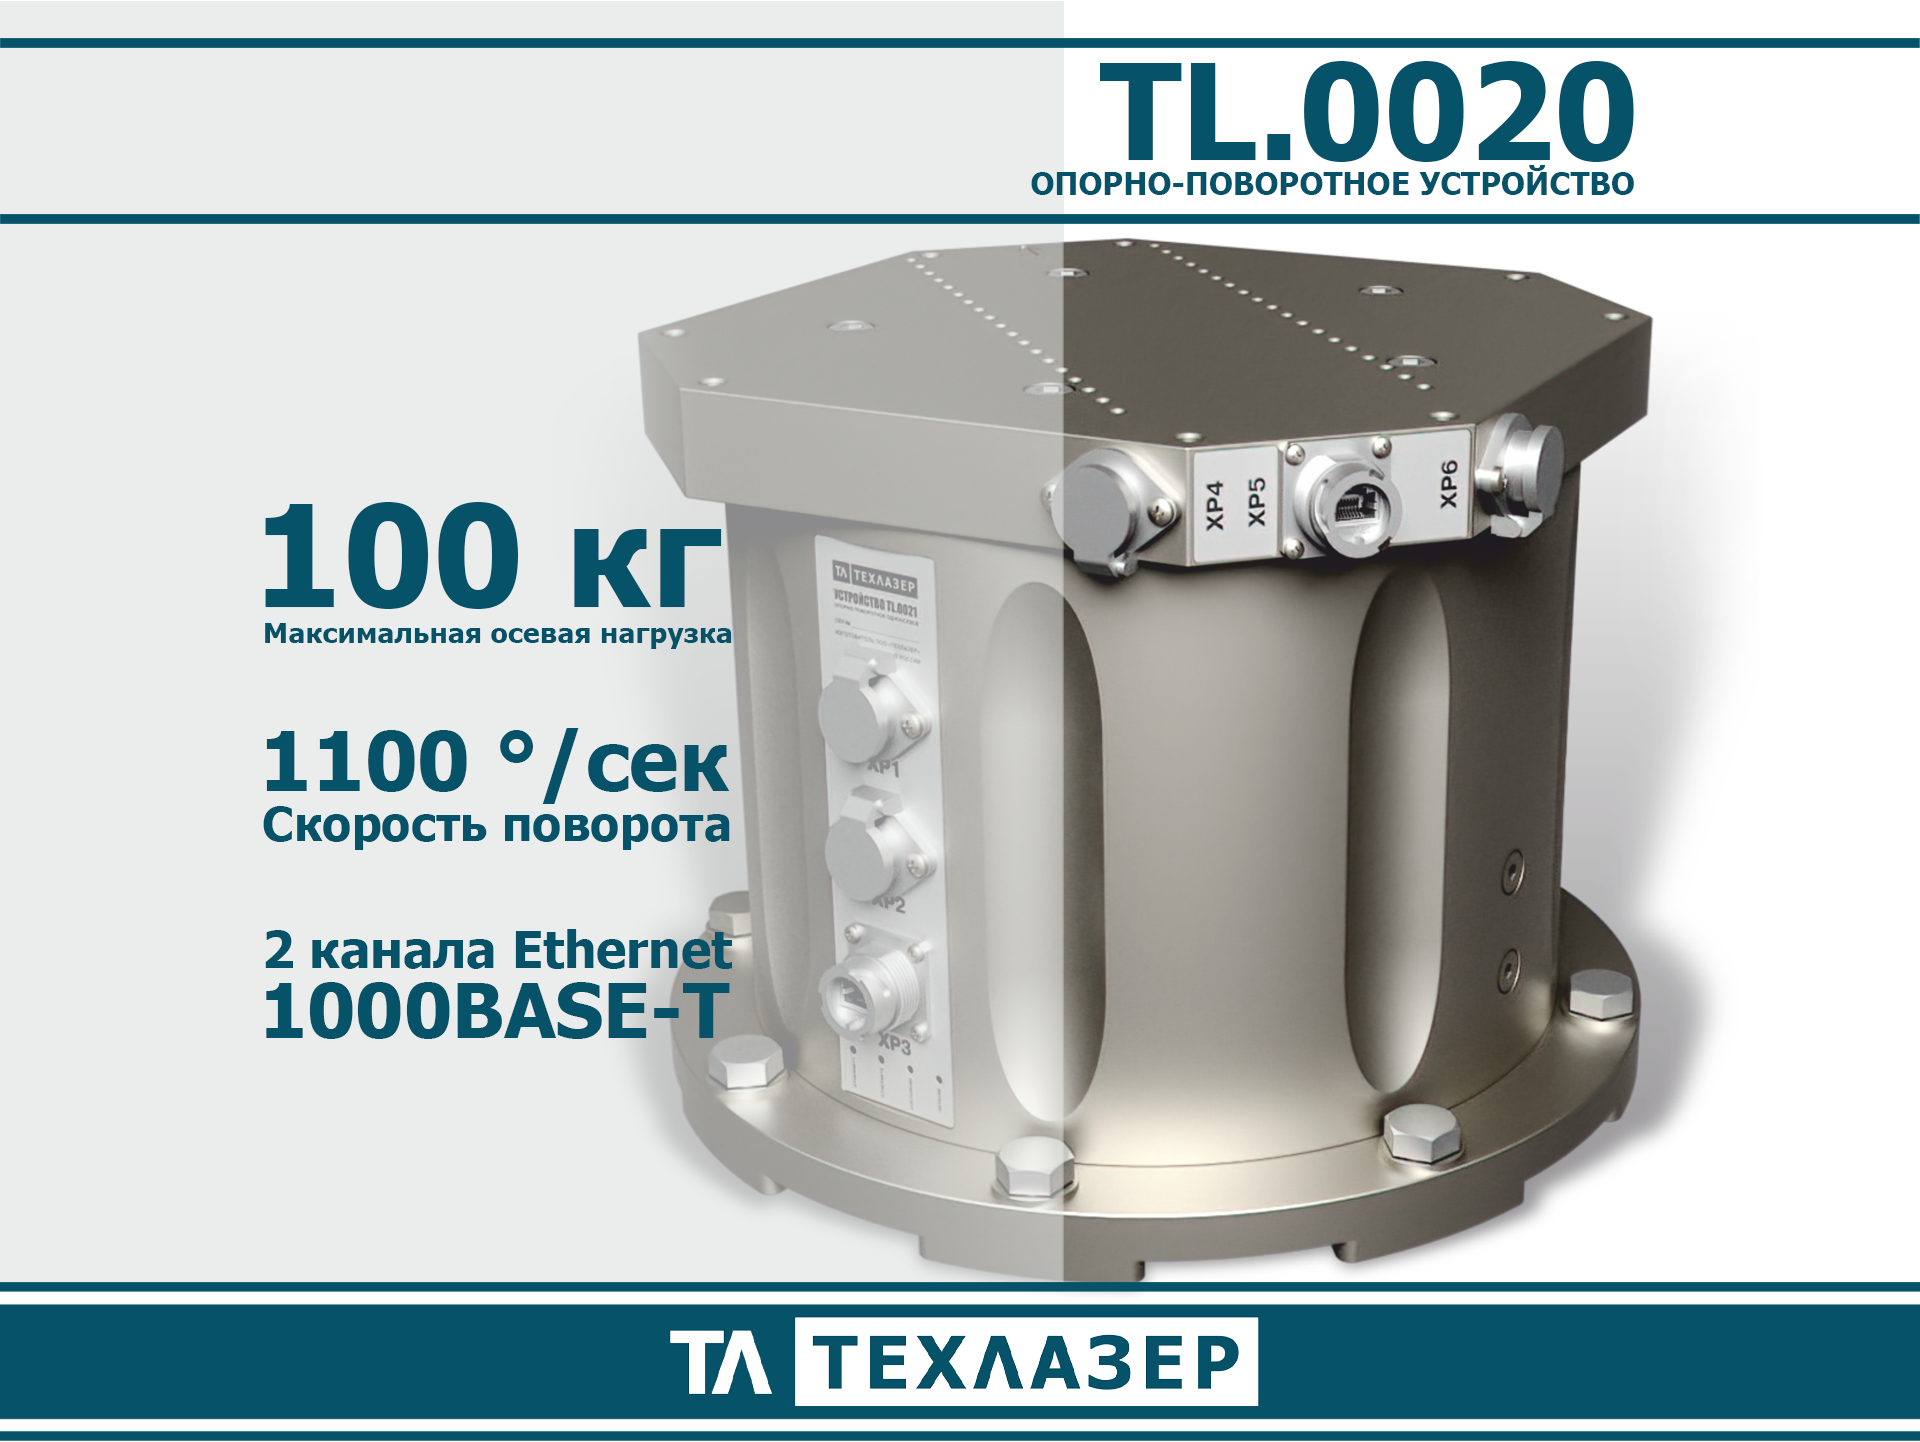 Опорно-поворотное устройство TL.0020 ТехЛазер